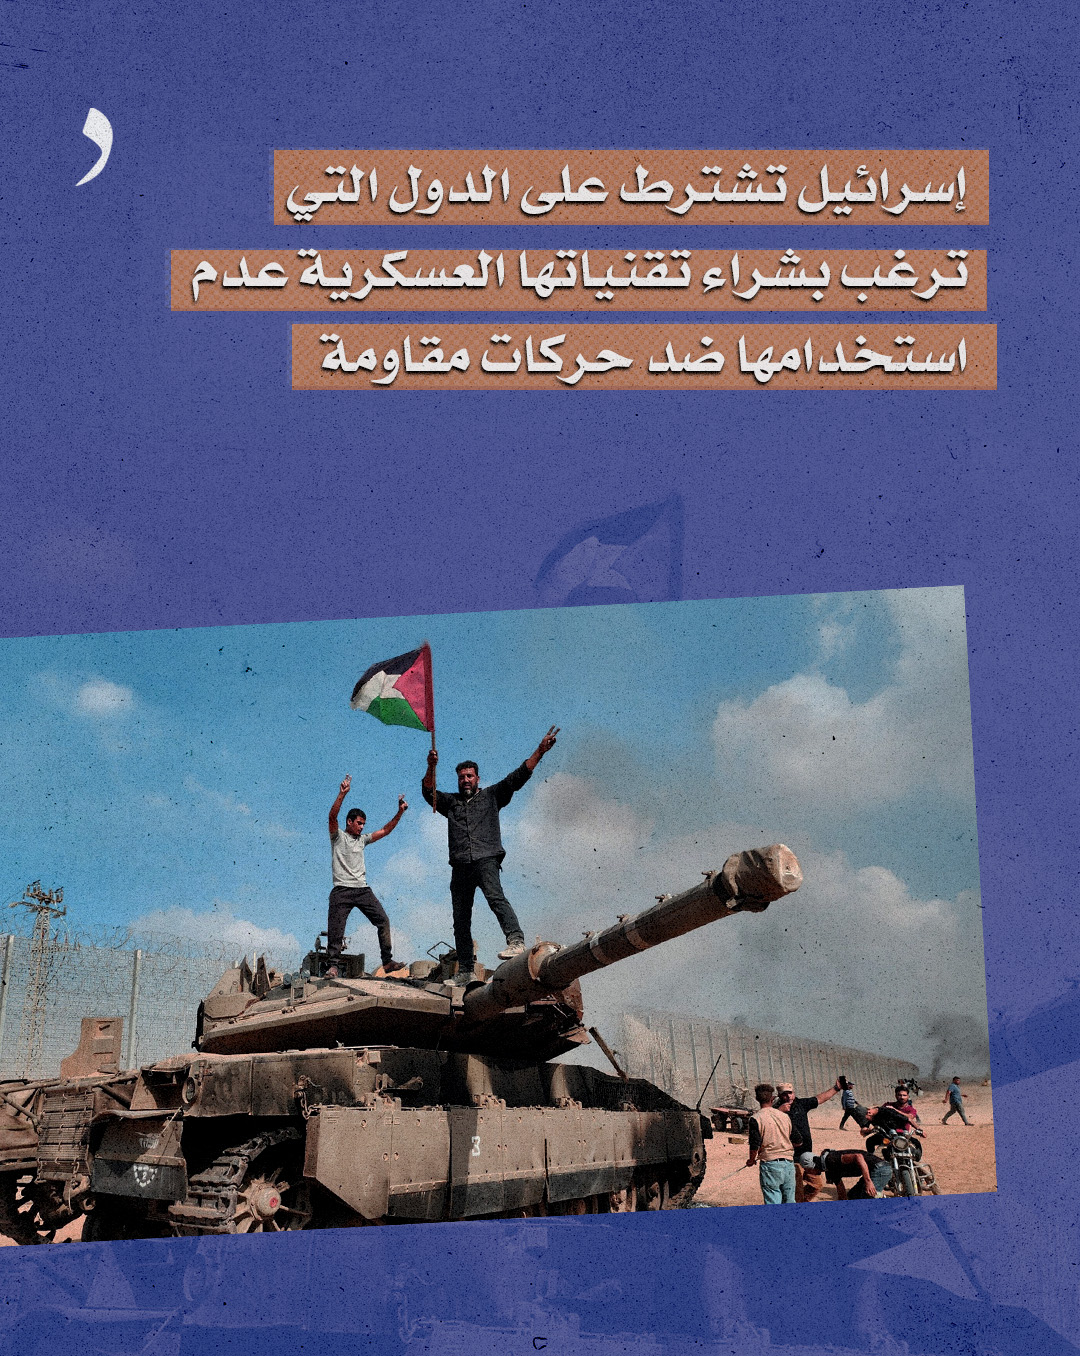 صورة إسرائيل تشترط على الدول التي ترغب بشراء تقنياتها العسكرية عدم استخدامها ضد حركات مقاومة